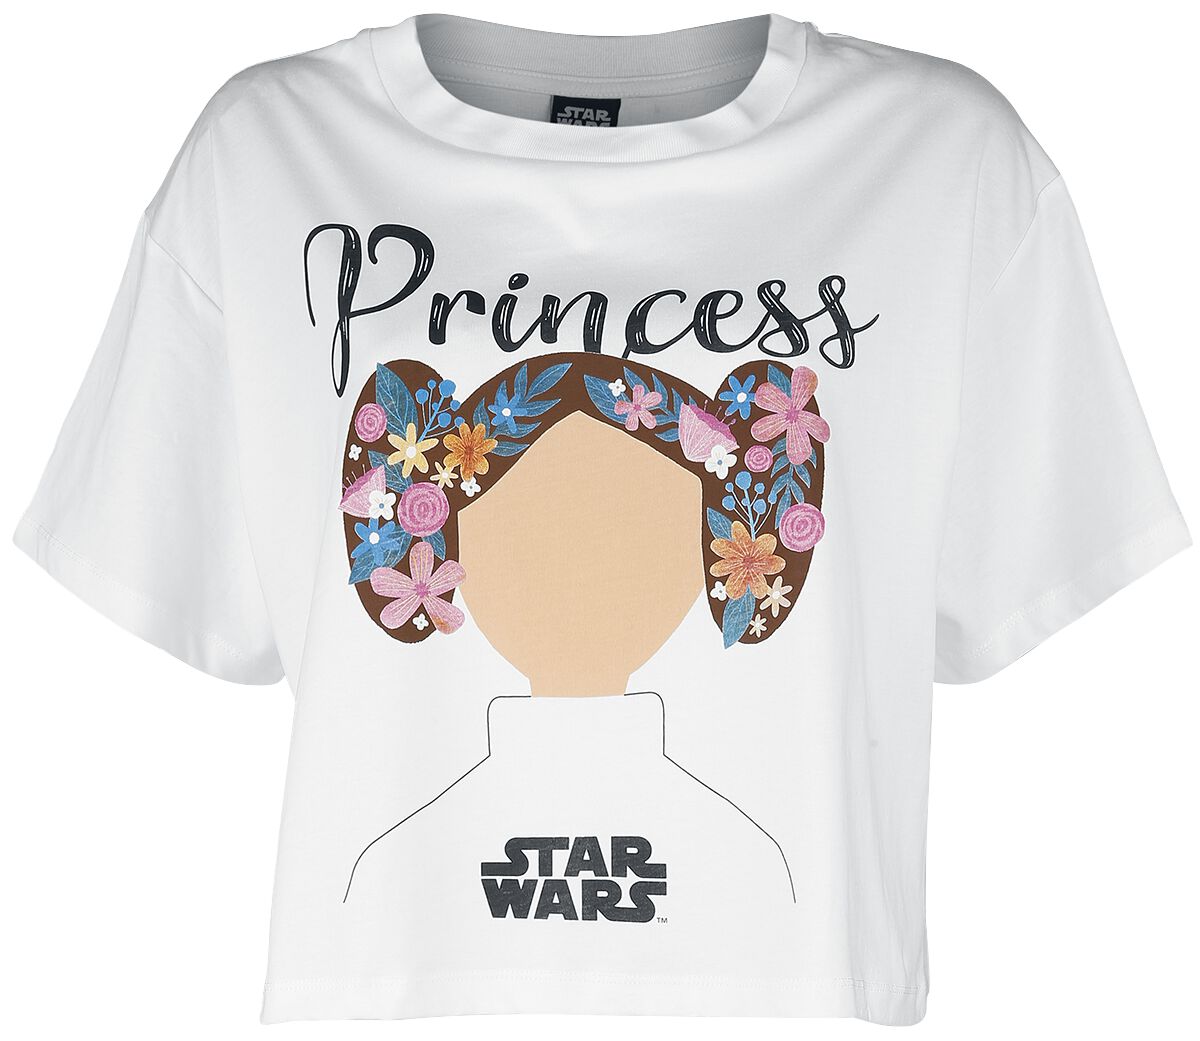 Star Wars T-Shirt - Star Wars - Princess Lea - S bis XXL - für Damen - Größe L - weiß  - EMP exklusives Merchandise!